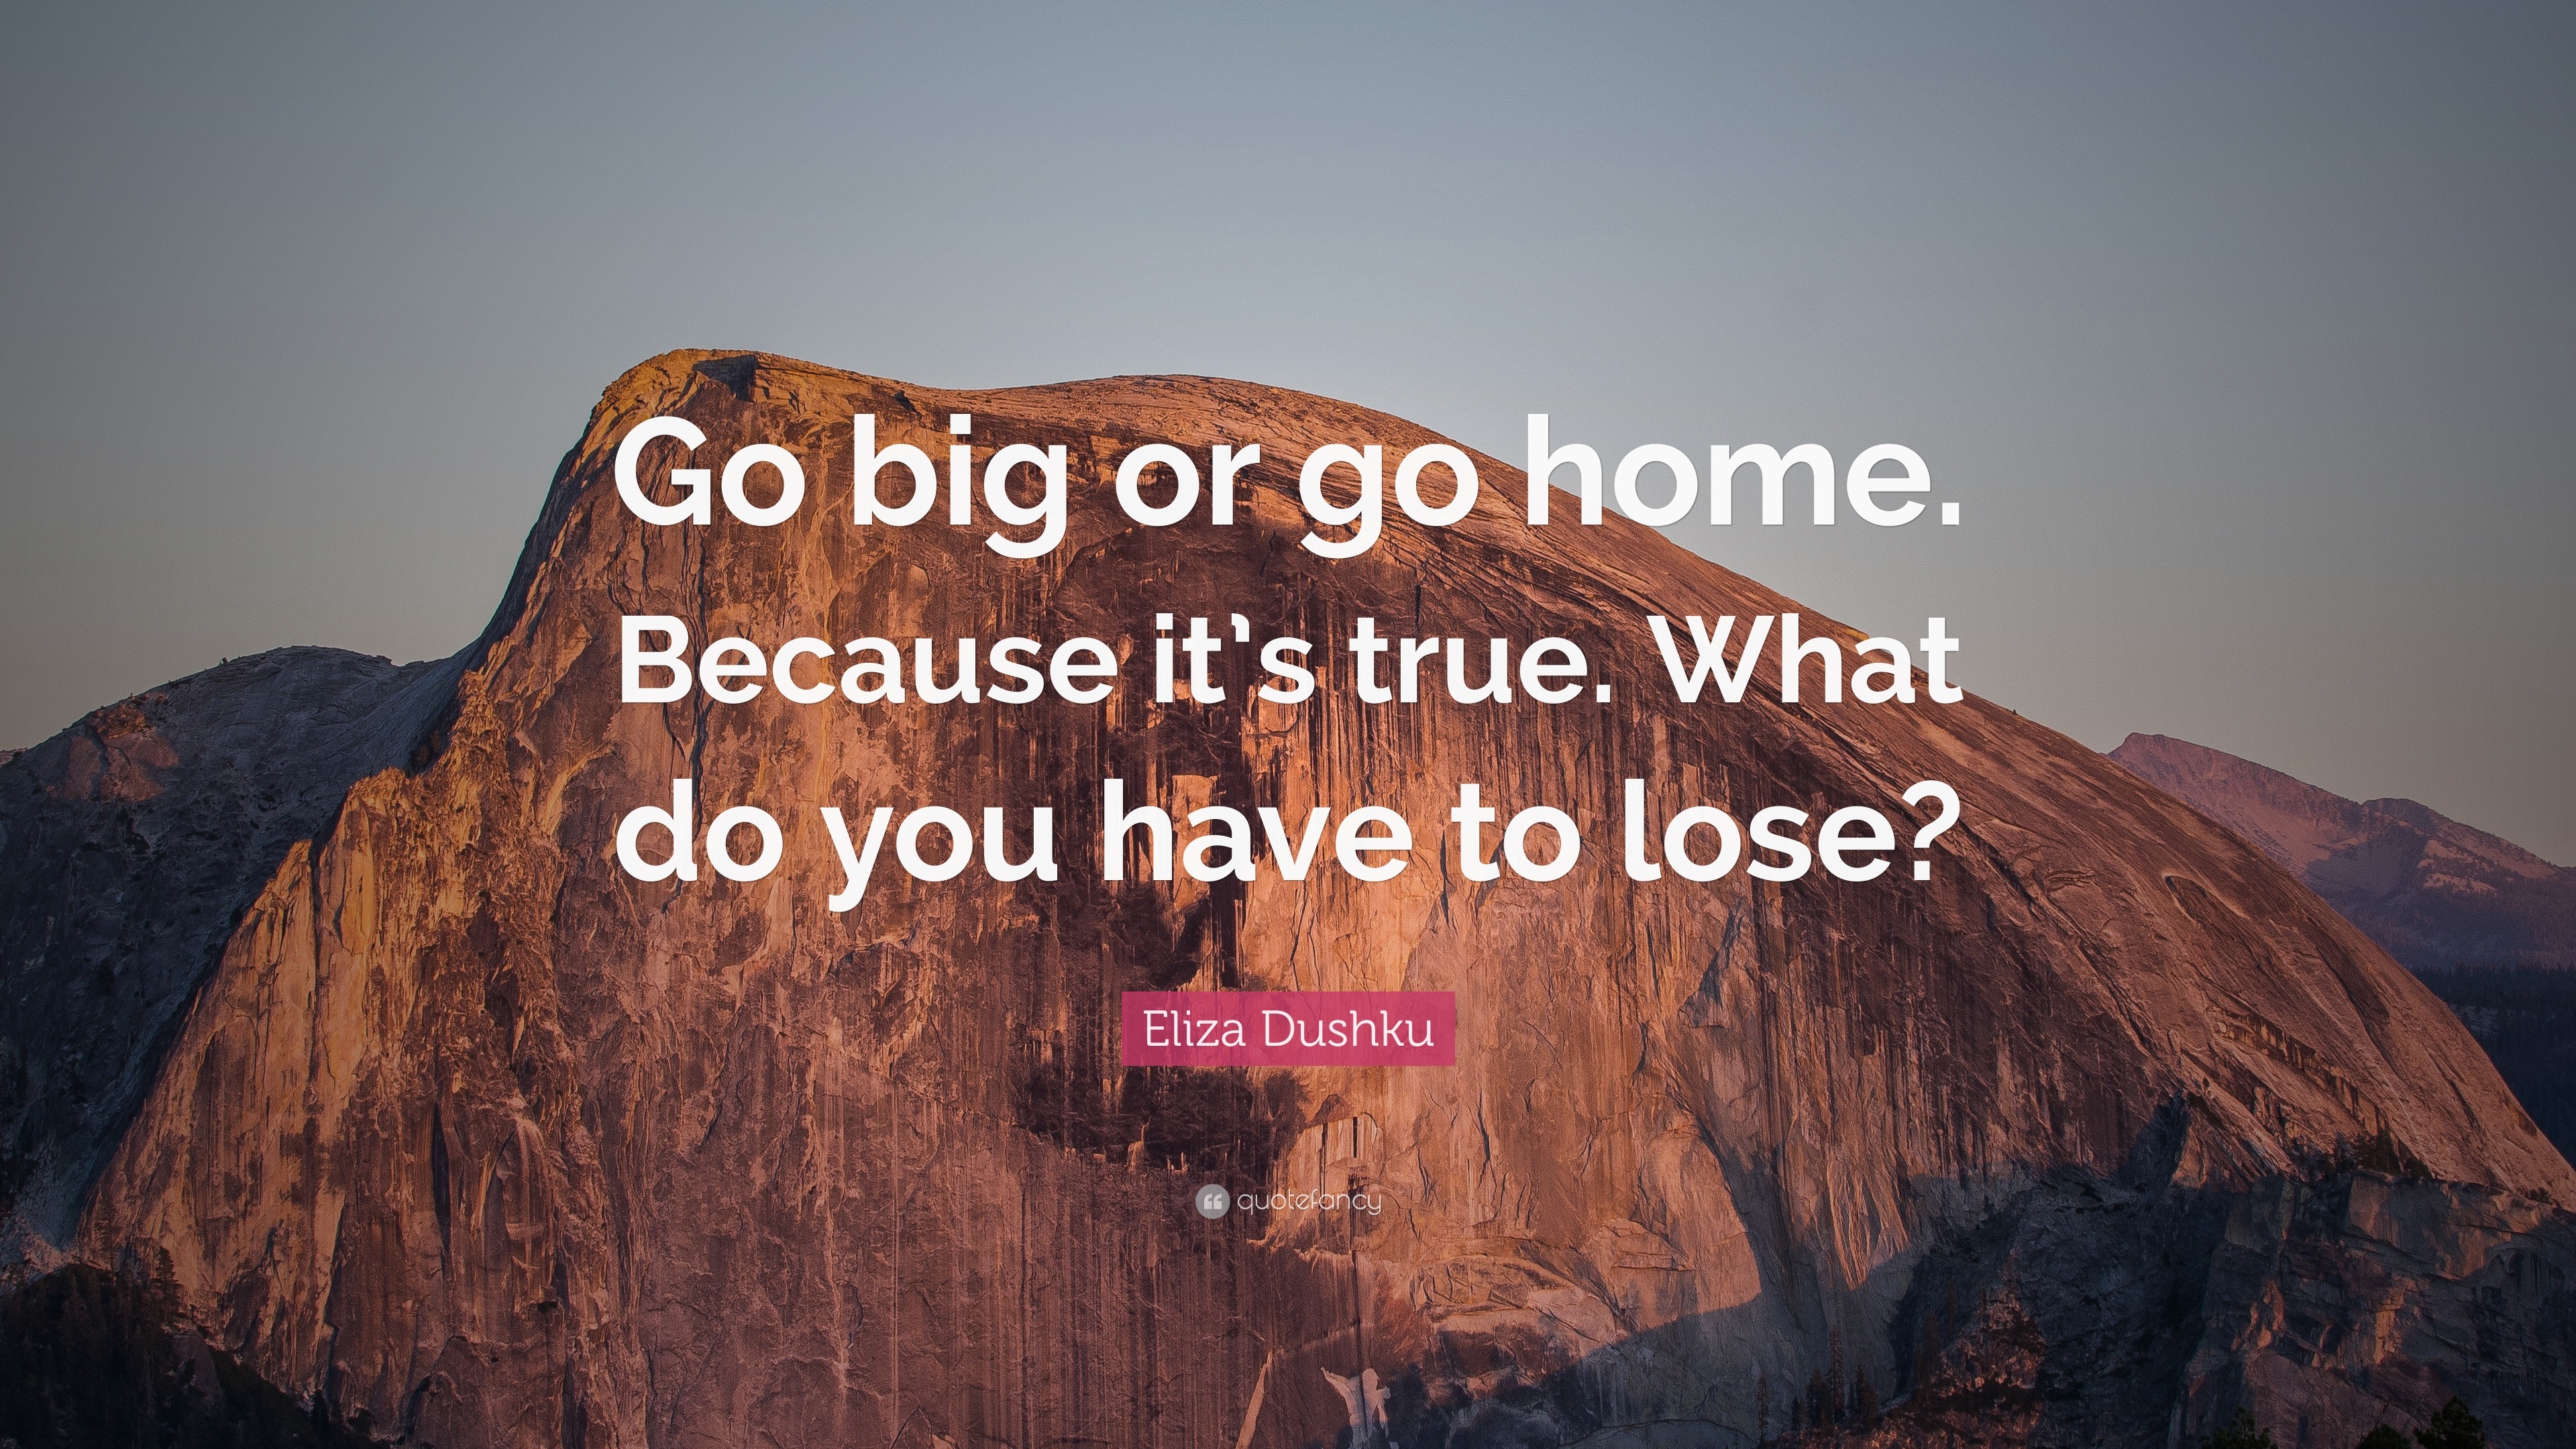 Go Big Or Go Home Origin Eliza Dushku Quote: “Go big or go home. Because it’s true. What do you